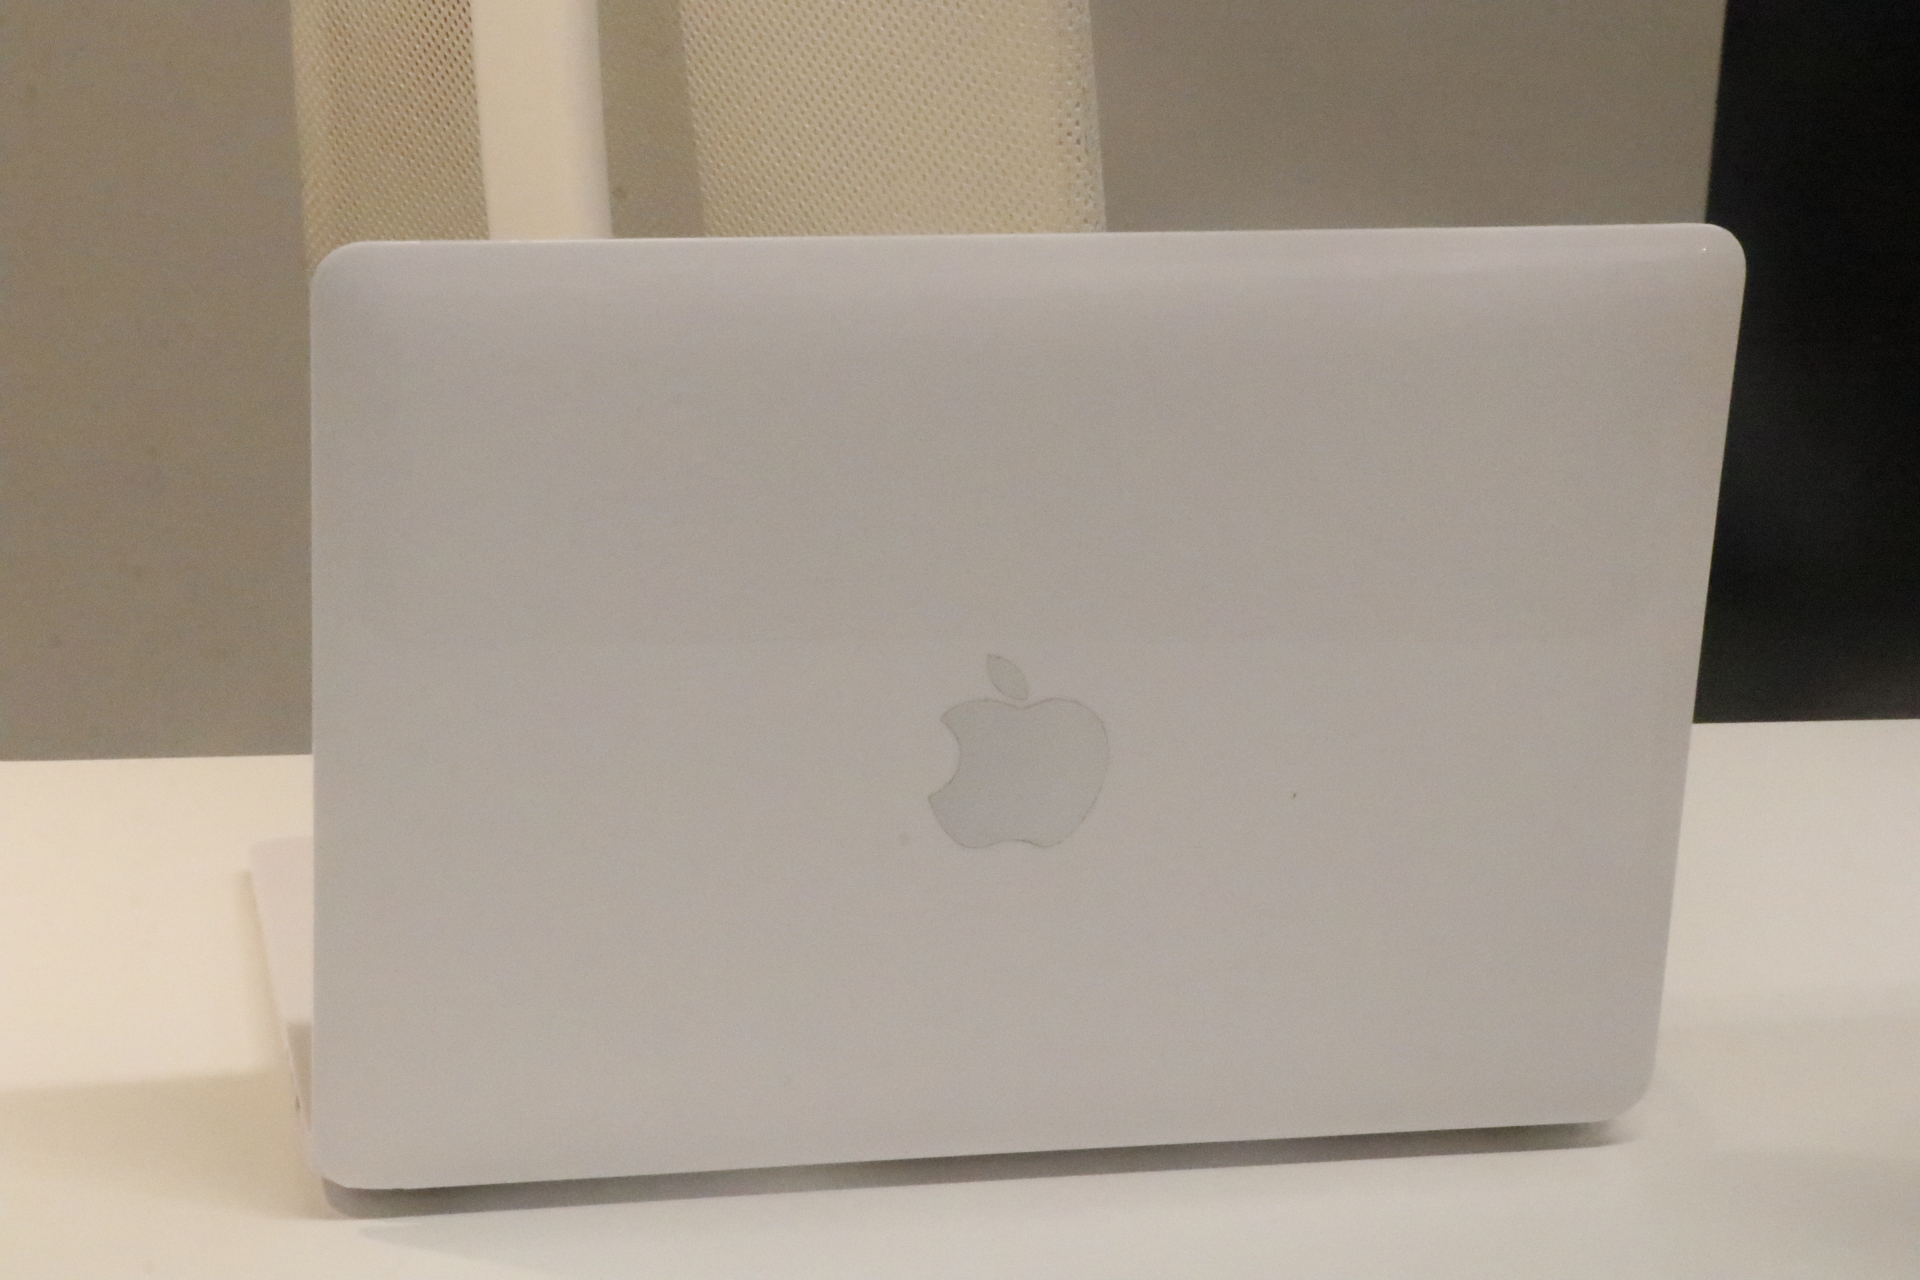 新款14/16英寸MacBook Pro型号SD读卡器插槽出问题